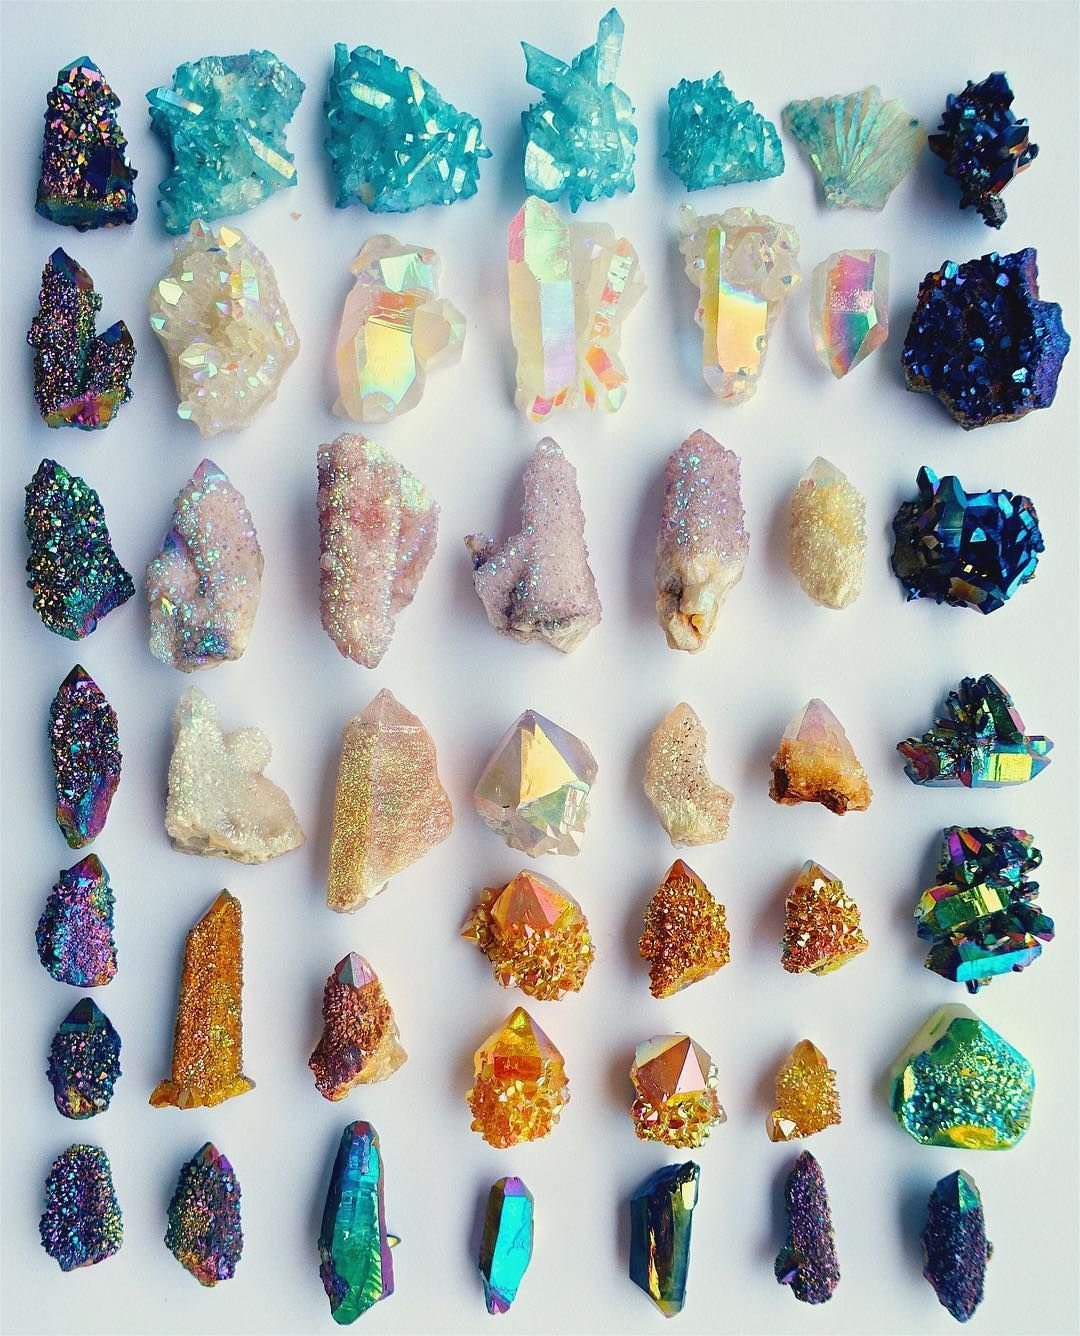 Самоцветы виды. Самоцветы минералы натуральные камни. Самоцветы минералы Кристалл. Коллекция "минералы и горные породы" (поделочные камни). Минералы и Самоцветы | Зимина 2001.